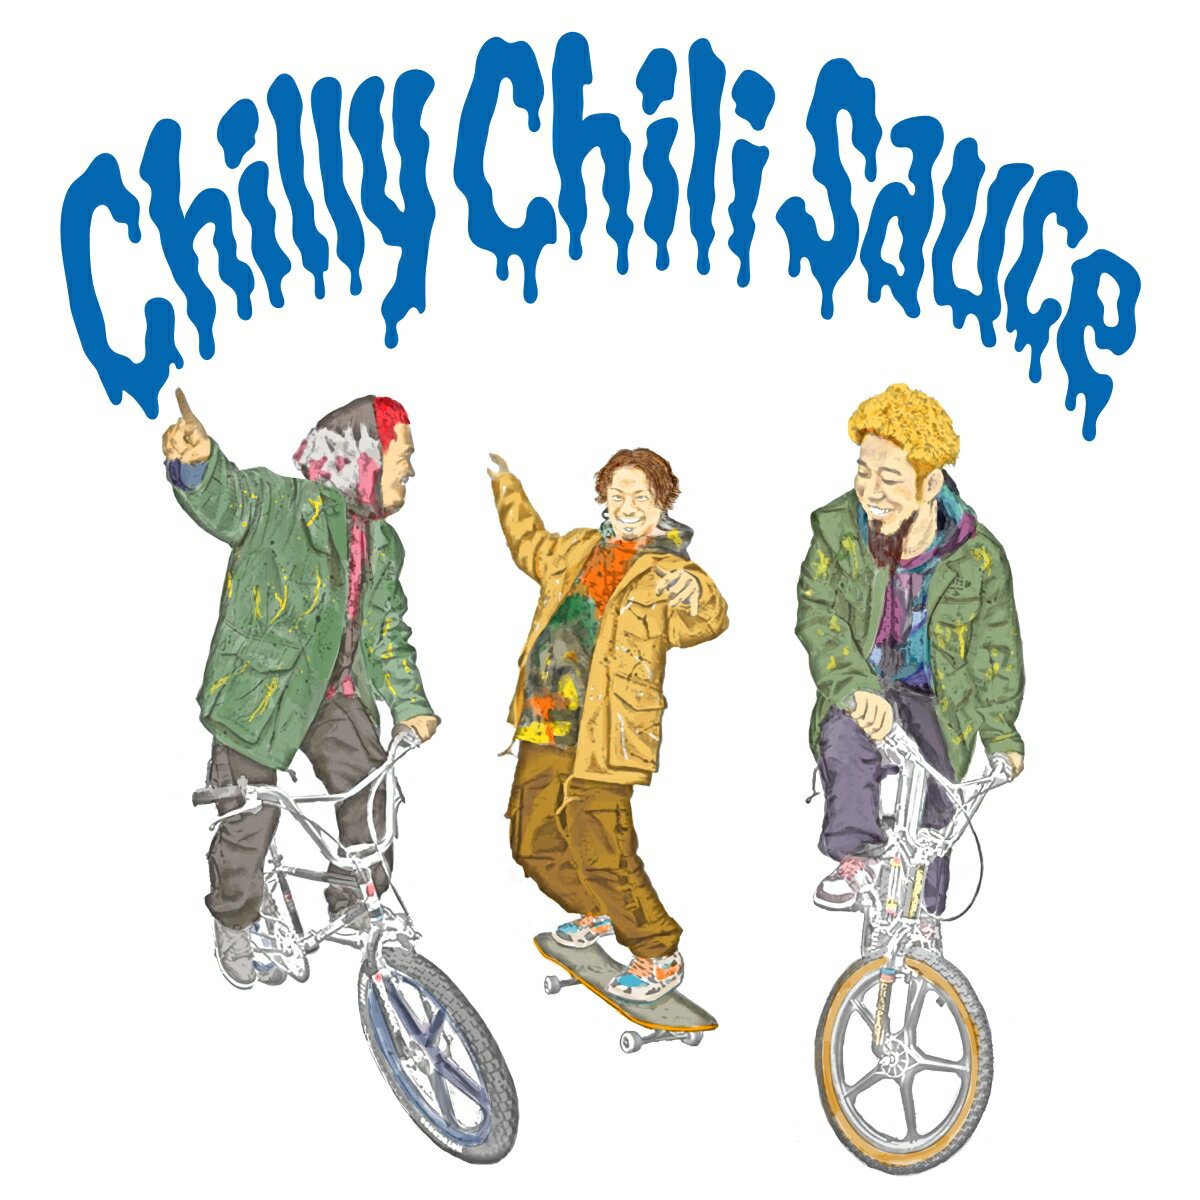 Chilly Chili Sauce (初回限定盤 CD＋DVD)